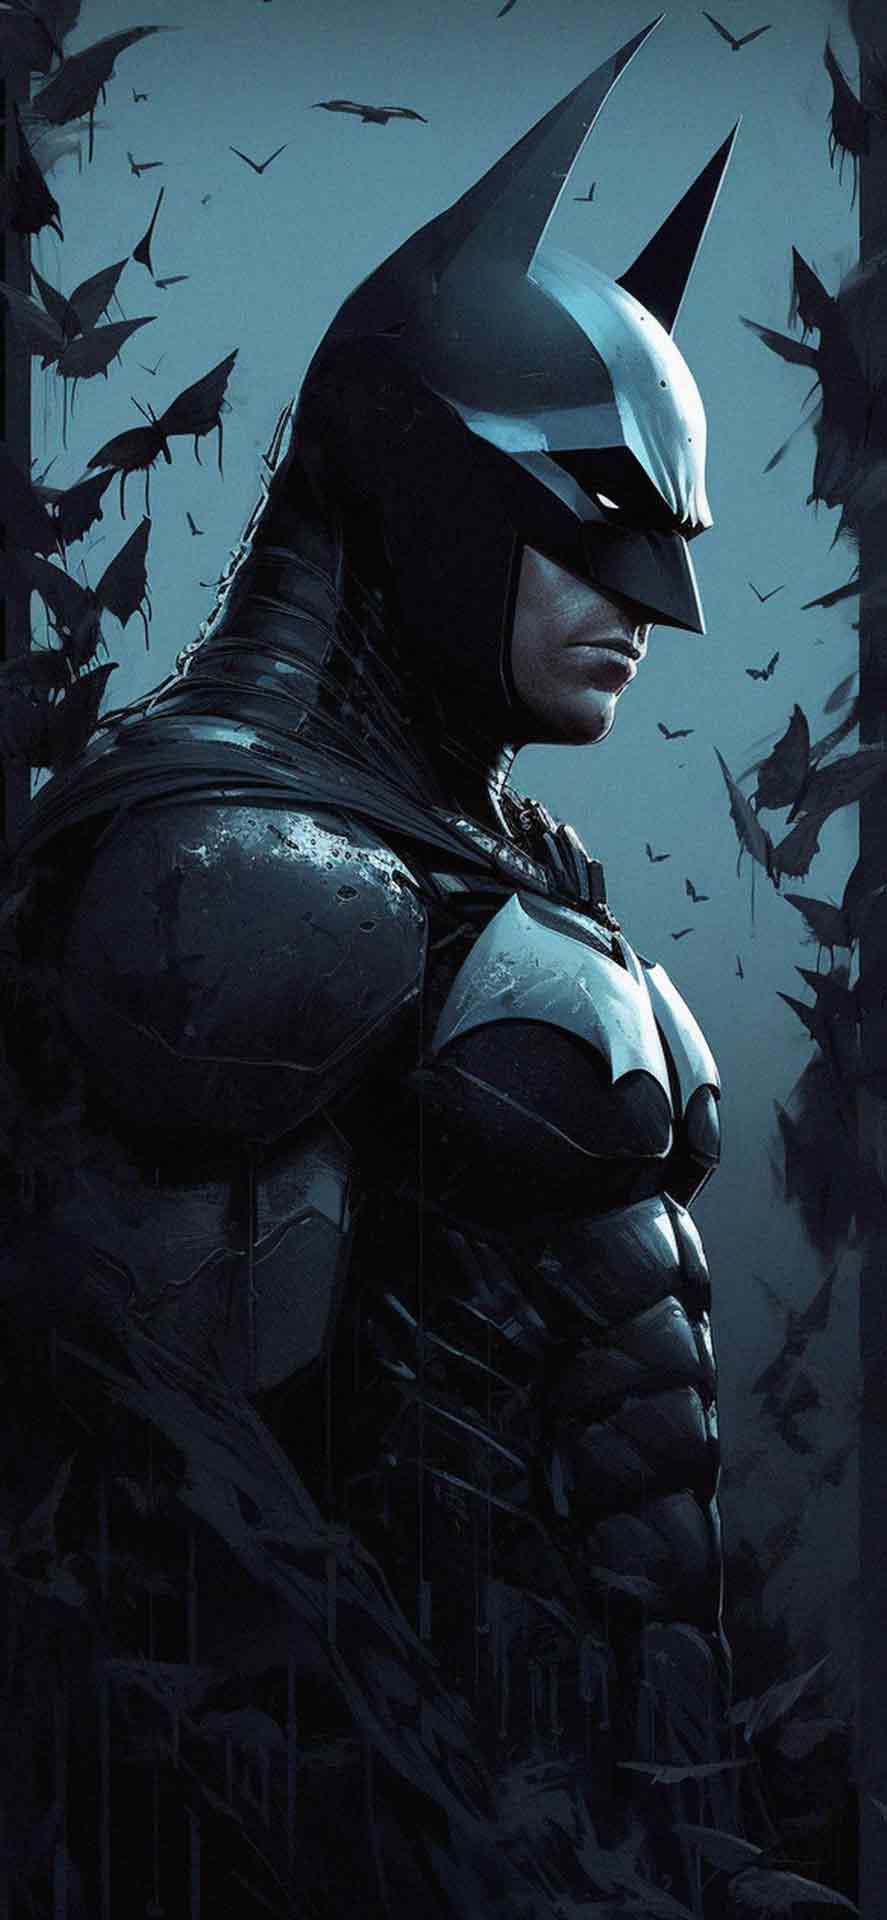 DC蝙蝠侠深蓝色壁纸